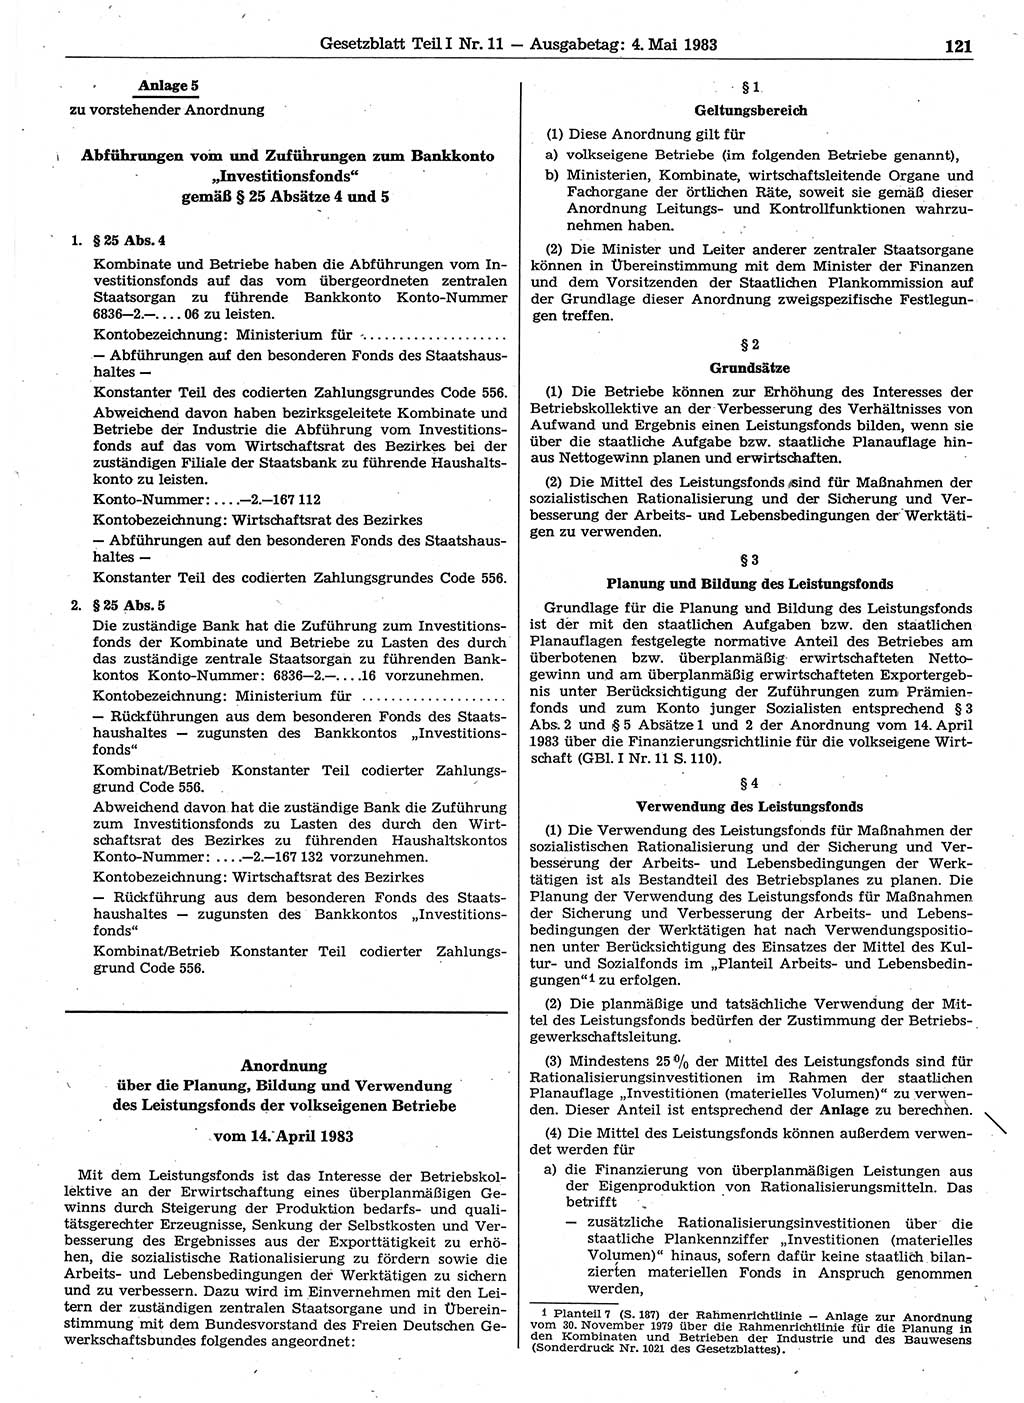 Gesetzblatt (GBl.) der Deutschen Demokratischen Republik (DDR) Teil Ⅰ 1983, Seite 121 (GBl. DDR Ⅰ 1983, S. 121)